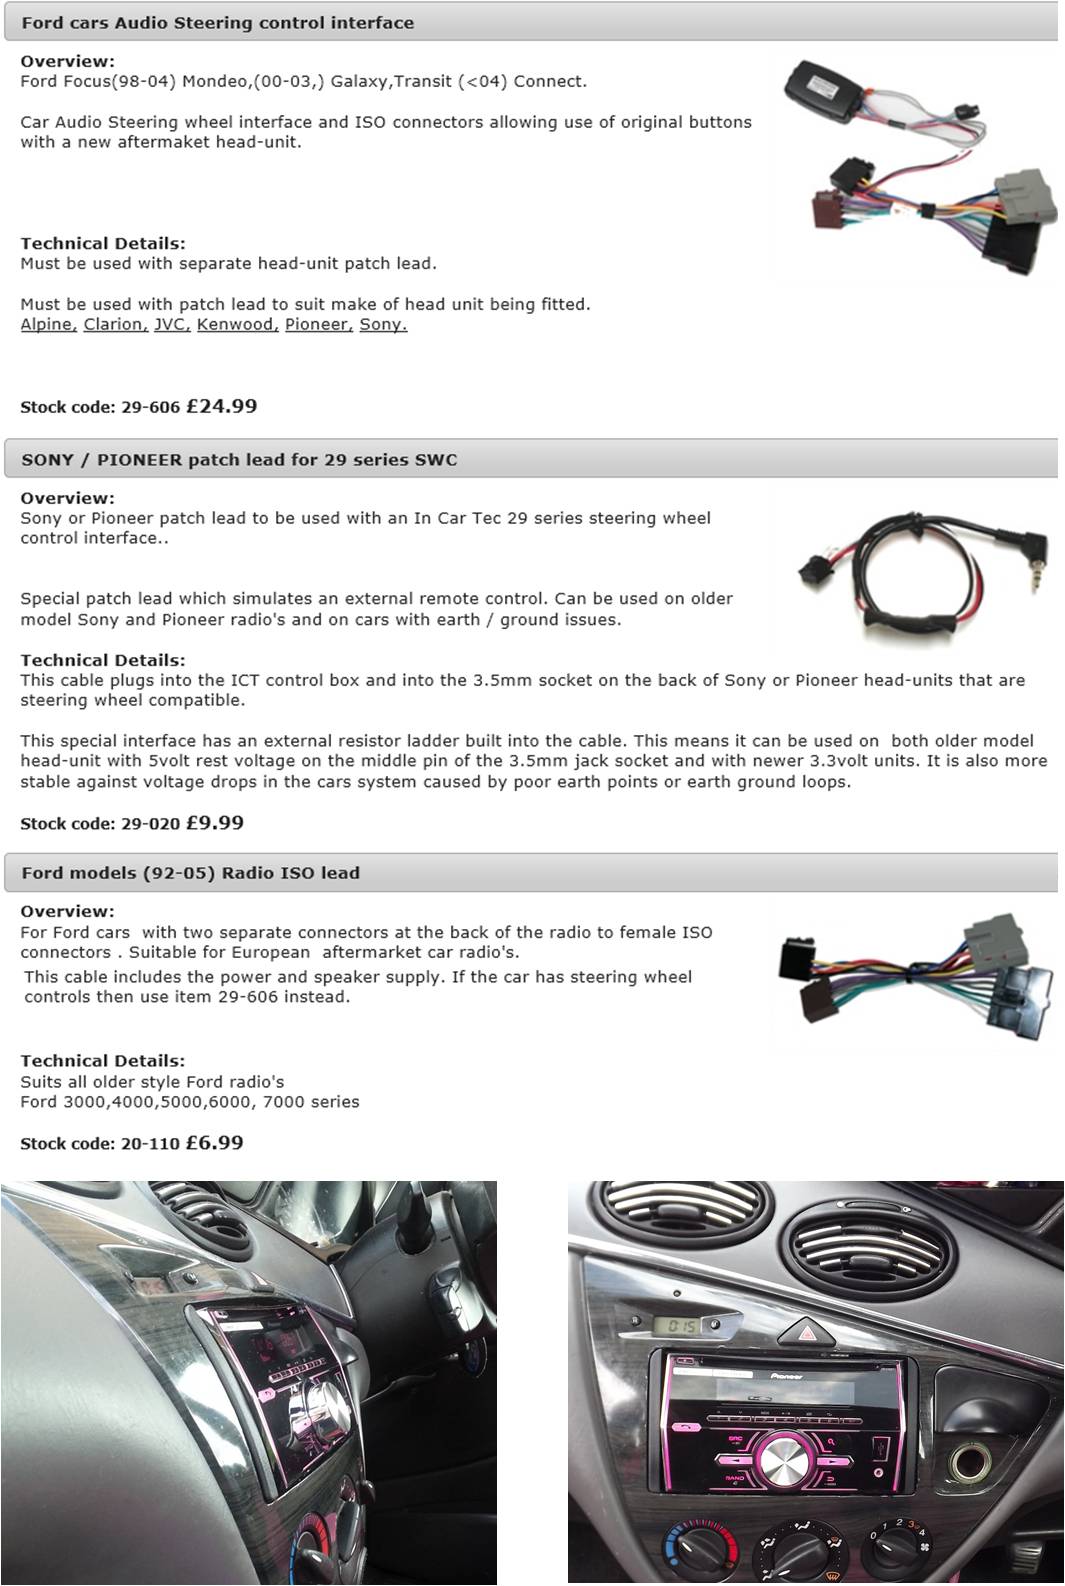 Ford Focus tech sheet 2.jpg